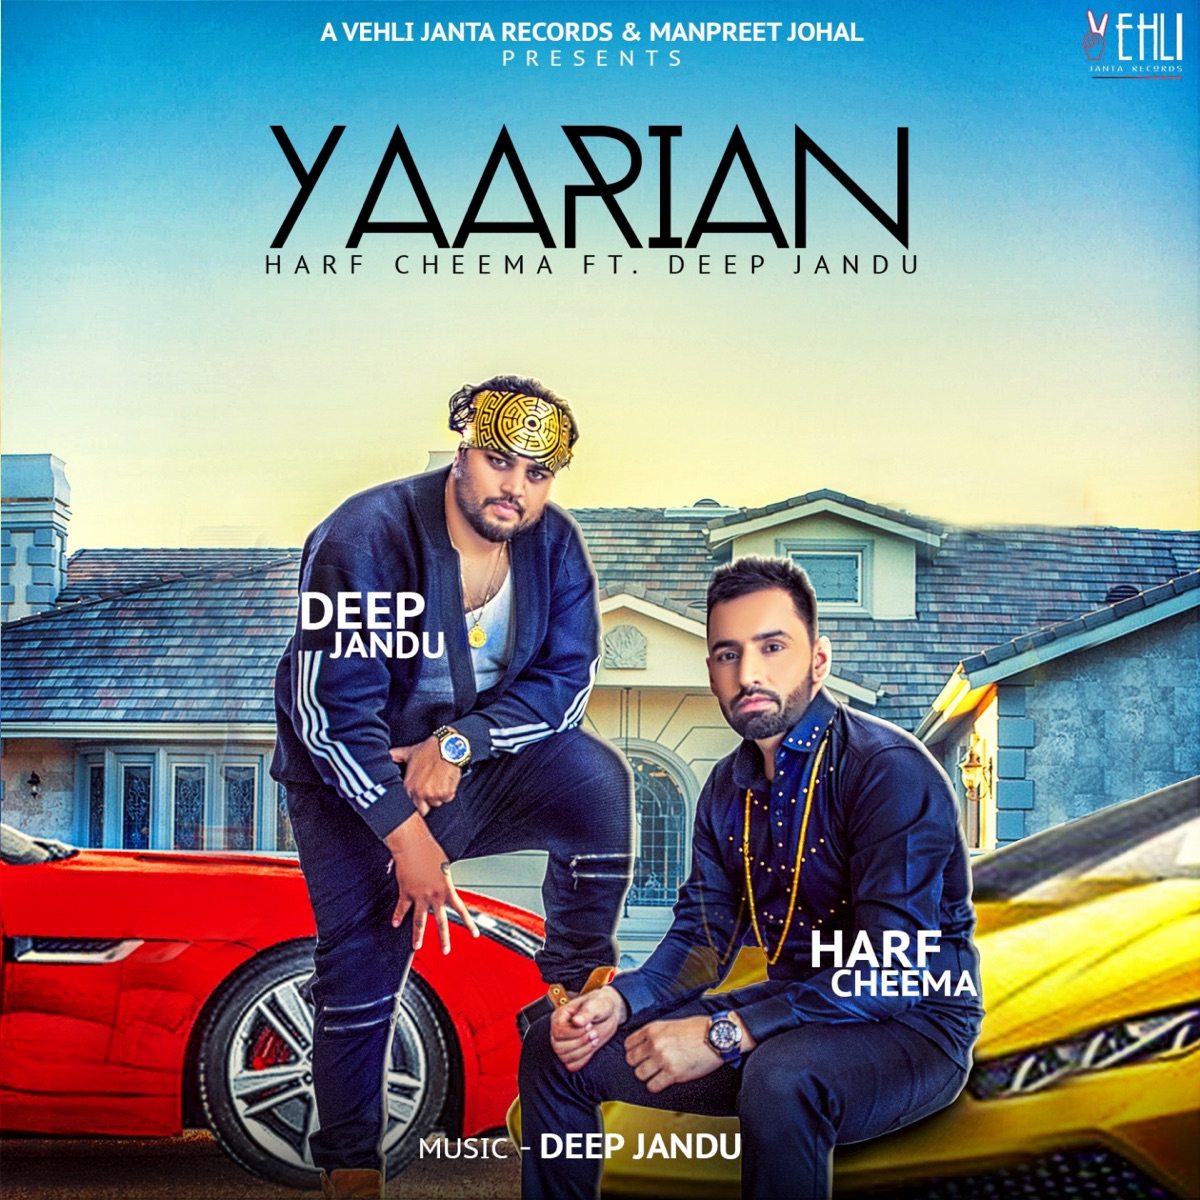 Yaarian (feat. Deep Jandu) - Single - Album by Harf Cheema - Apple Music